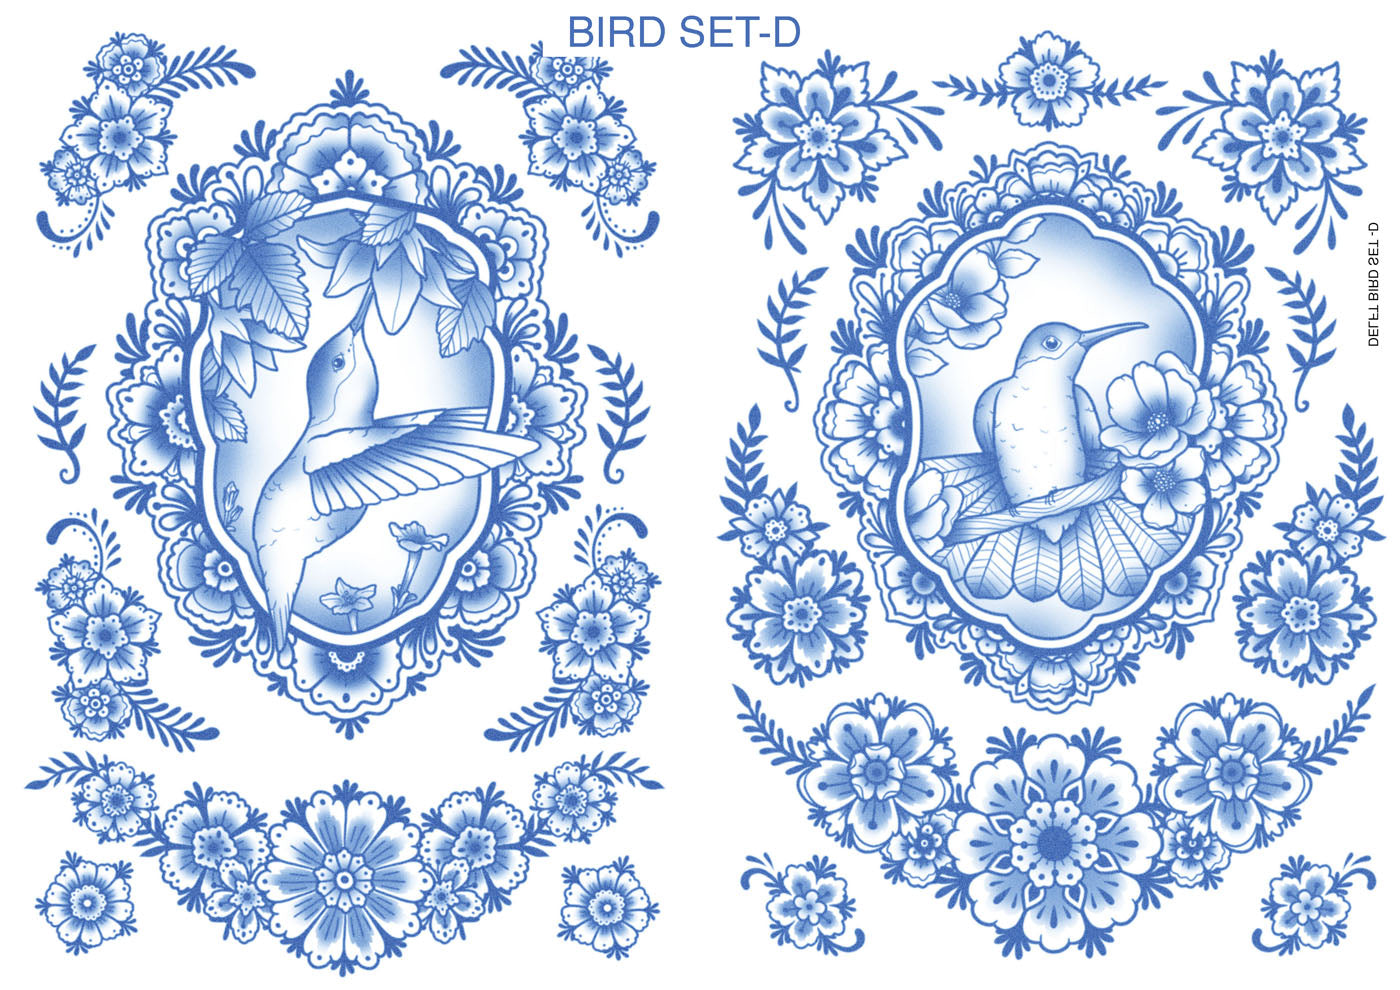 Delft Birds & Flower Tattoo Set -D